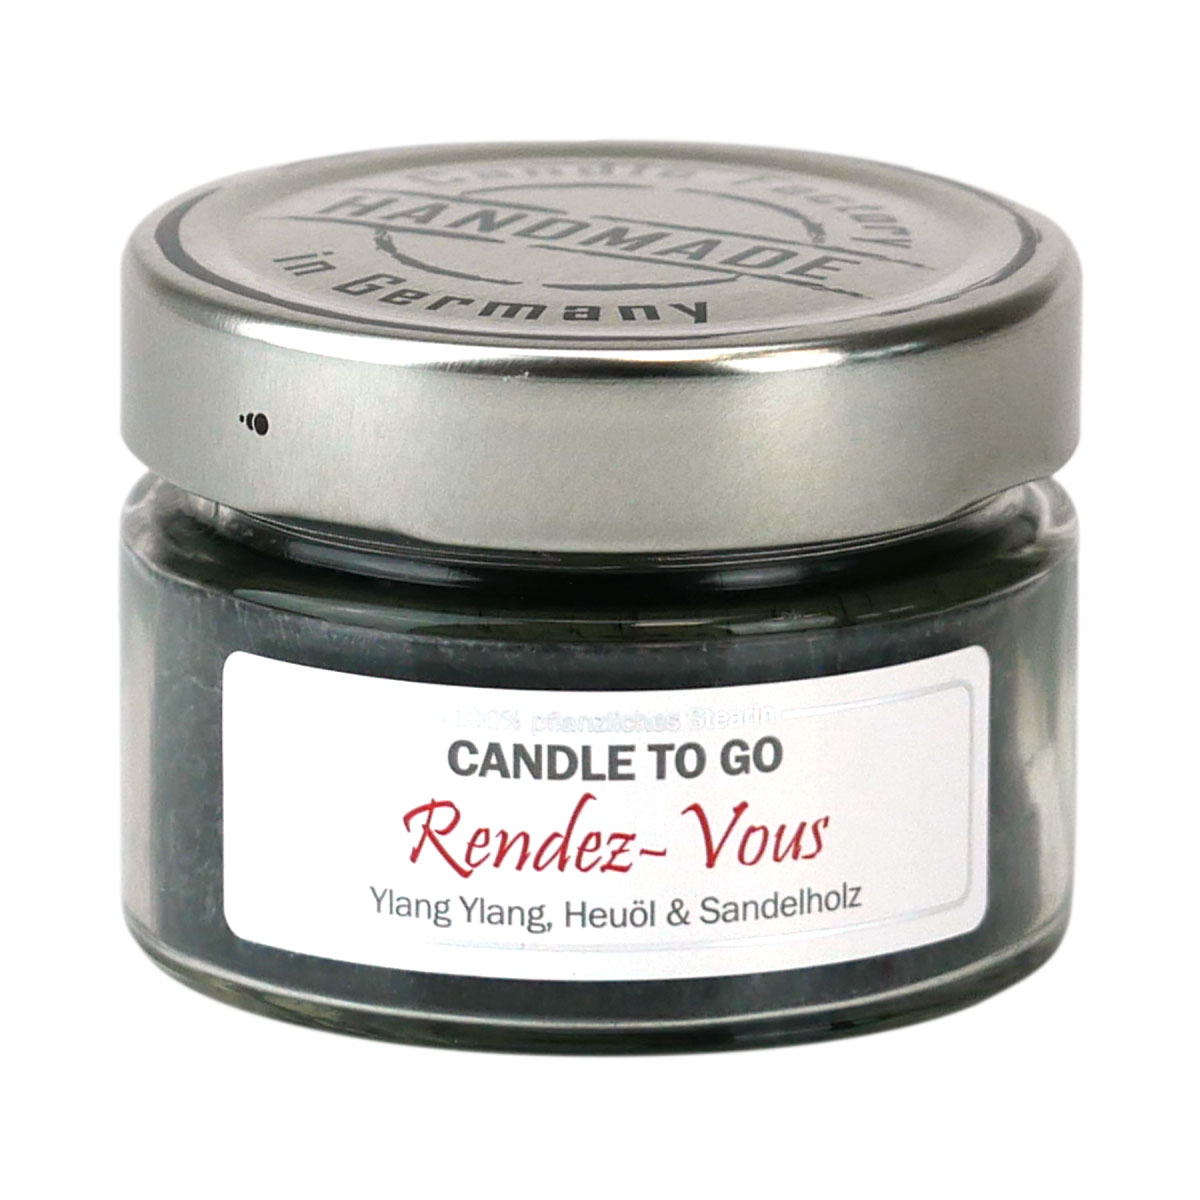 Rendez Vous - Candle to Go die Duftkerze für unterwegs